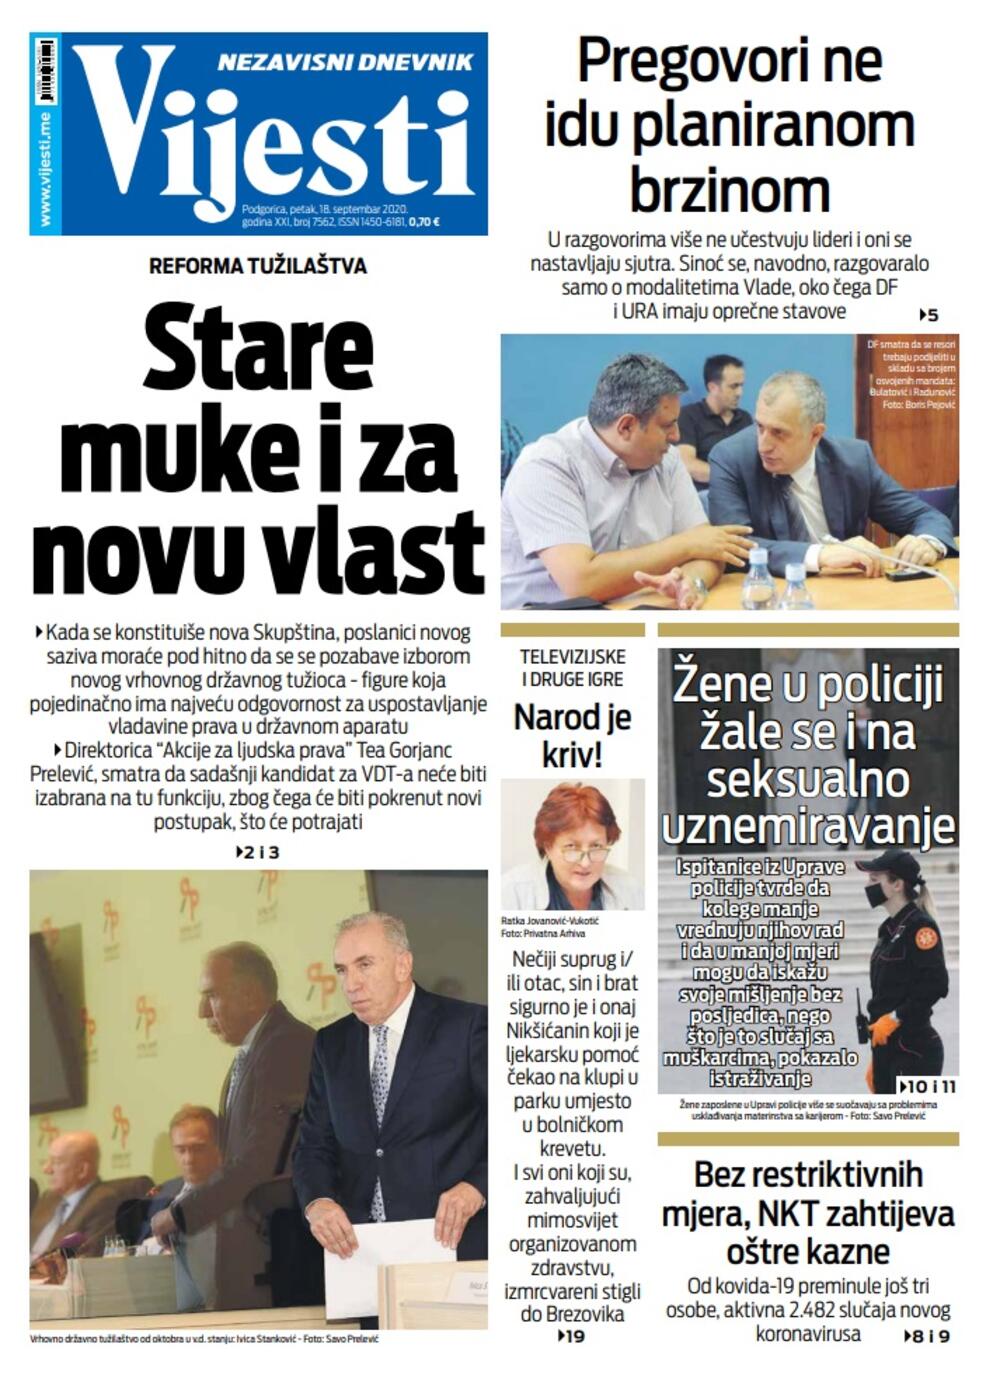 Naslovna strana "Vijesti" za 18. septembar 2020., Foto: Vijesti